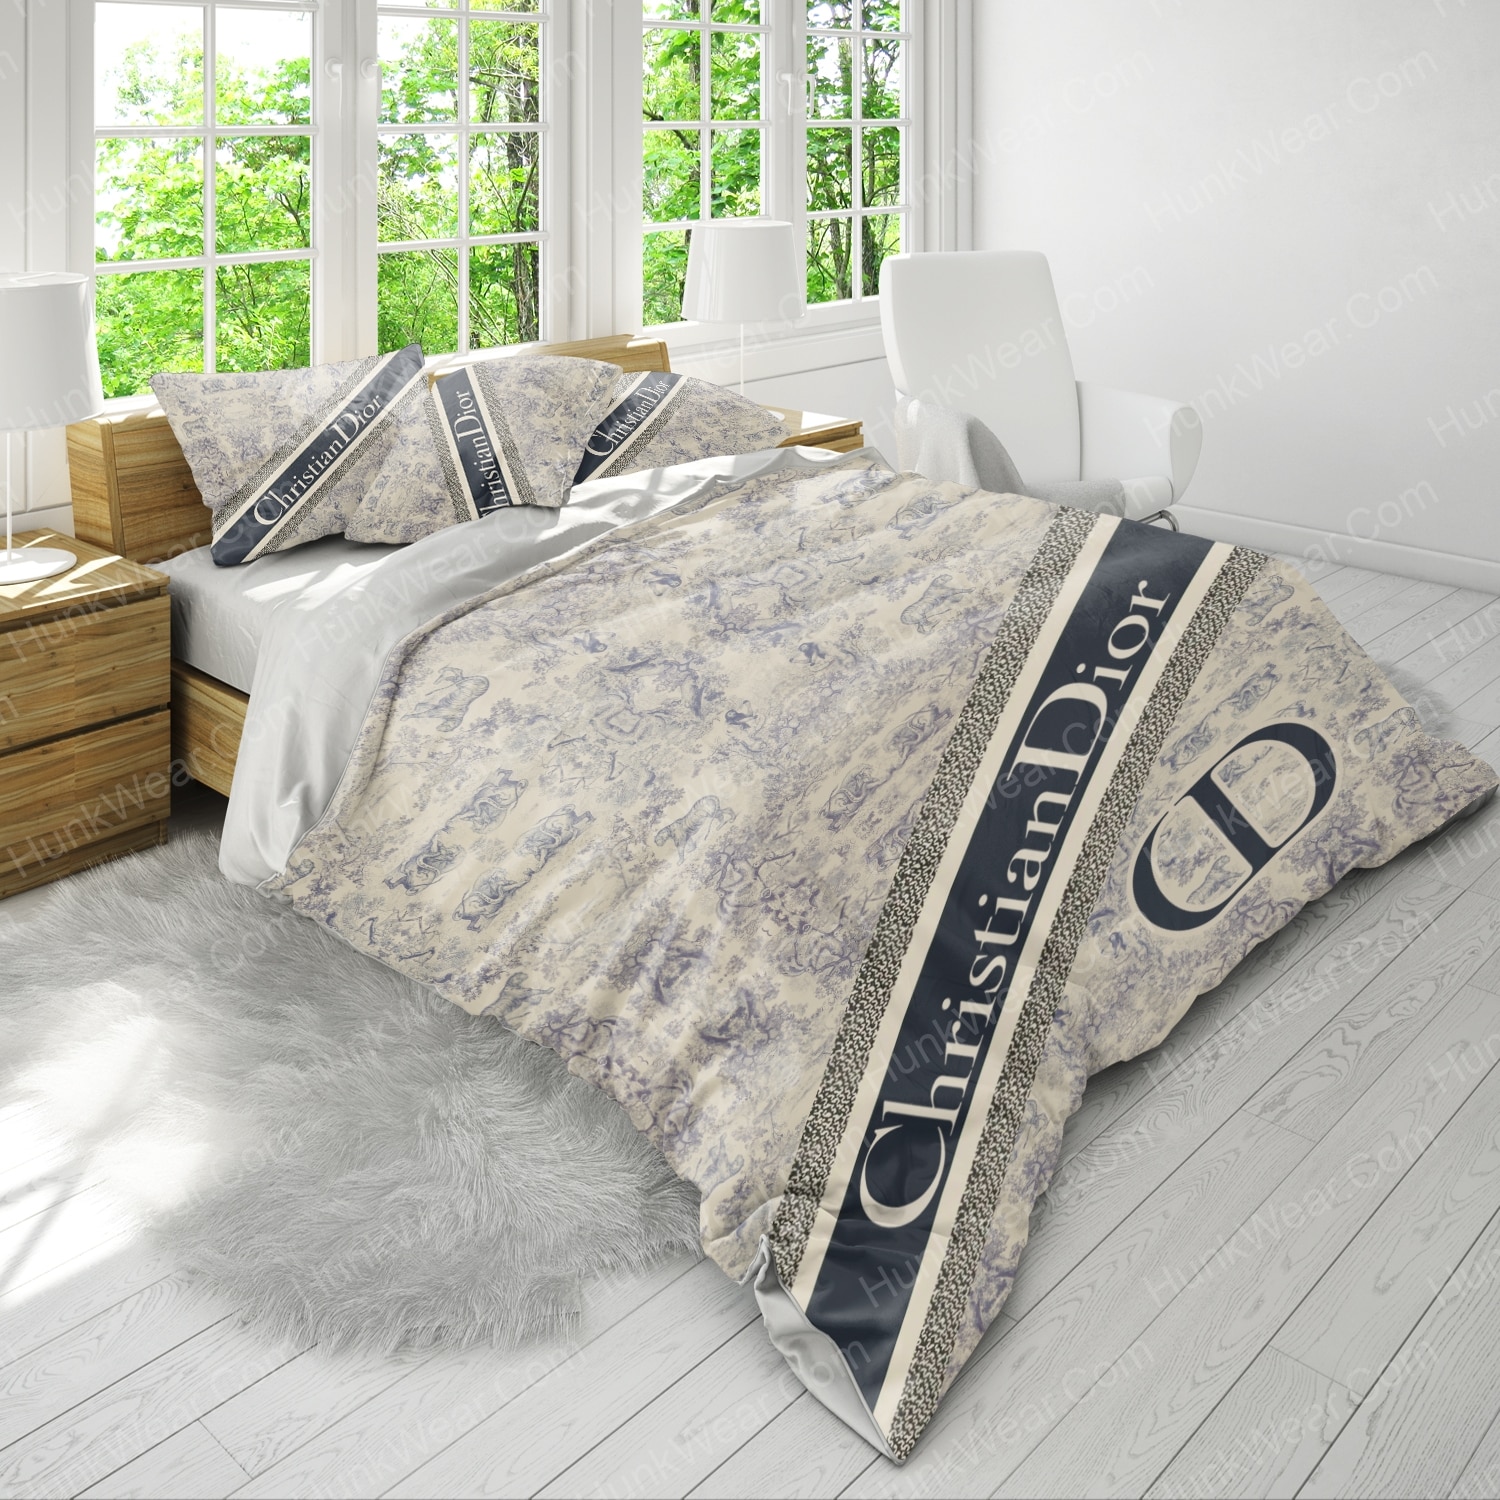 christian dior logo bed set bedding set 3